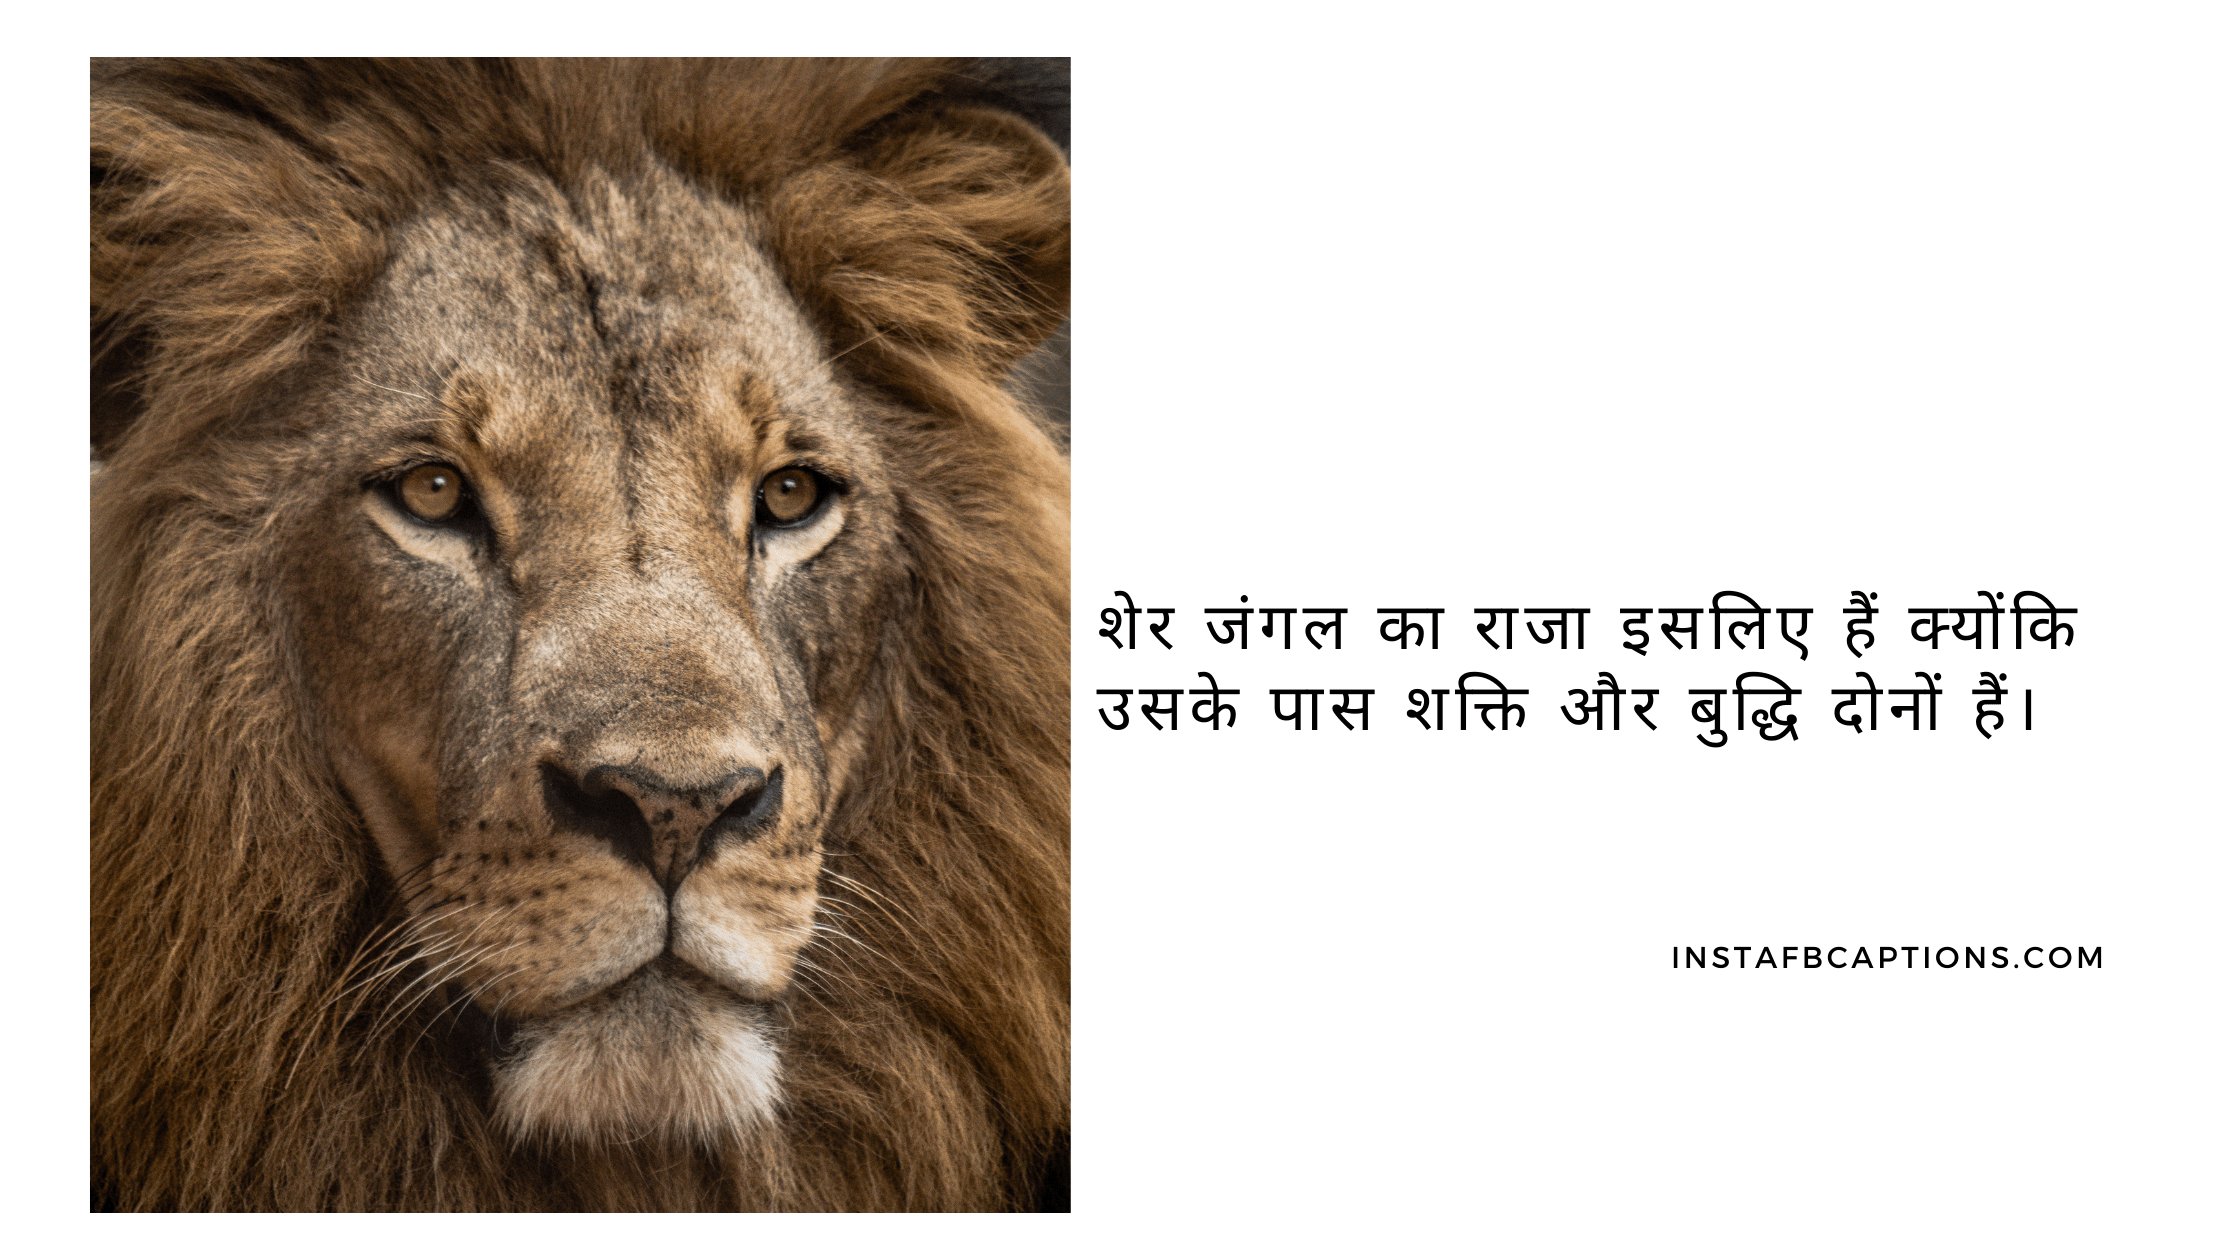 शेर जंगल का राजा इसलिए हैं क्योंकि उसके पास शक्ति और बुद्धि दोनों हैं।  - Amazing Lion King Captions in Hindi For Instagram - [New Captions] King Captions For Boys Instagram Post in 2023